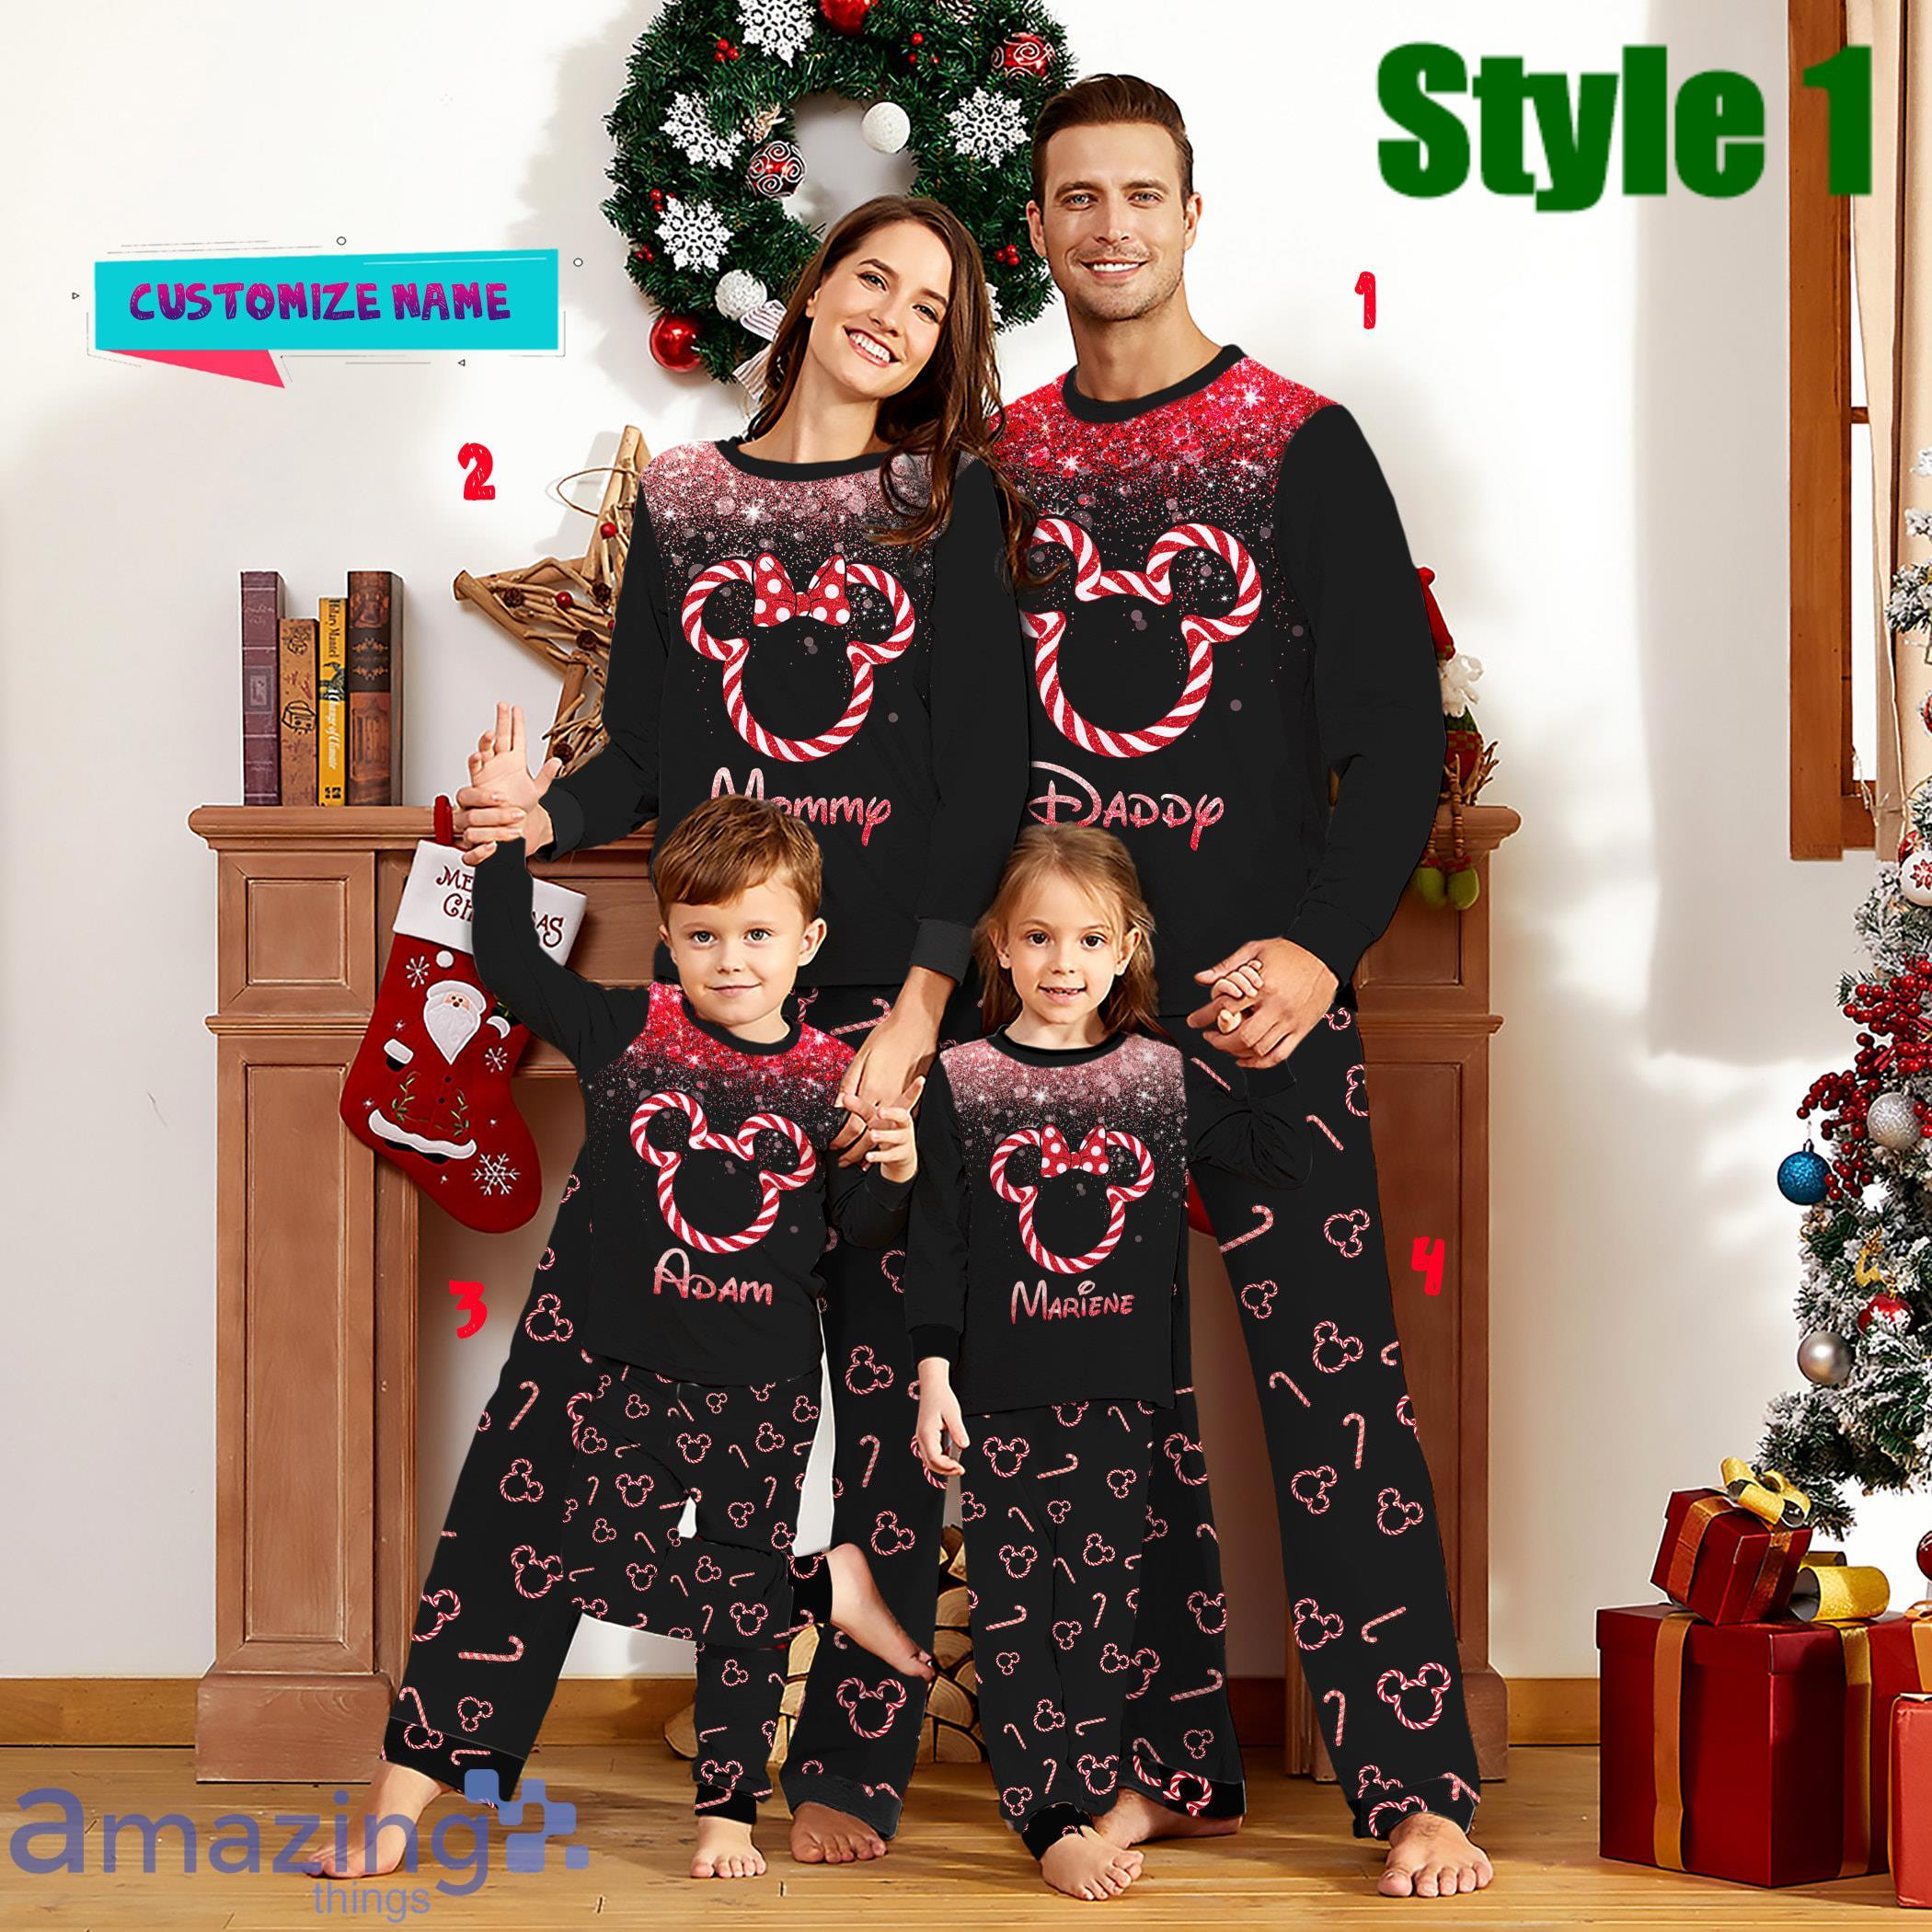 Custom Name Family Disney Christmas Pajamas  Mickey & Minnie Christmas Pajamas Set Product Photo 1